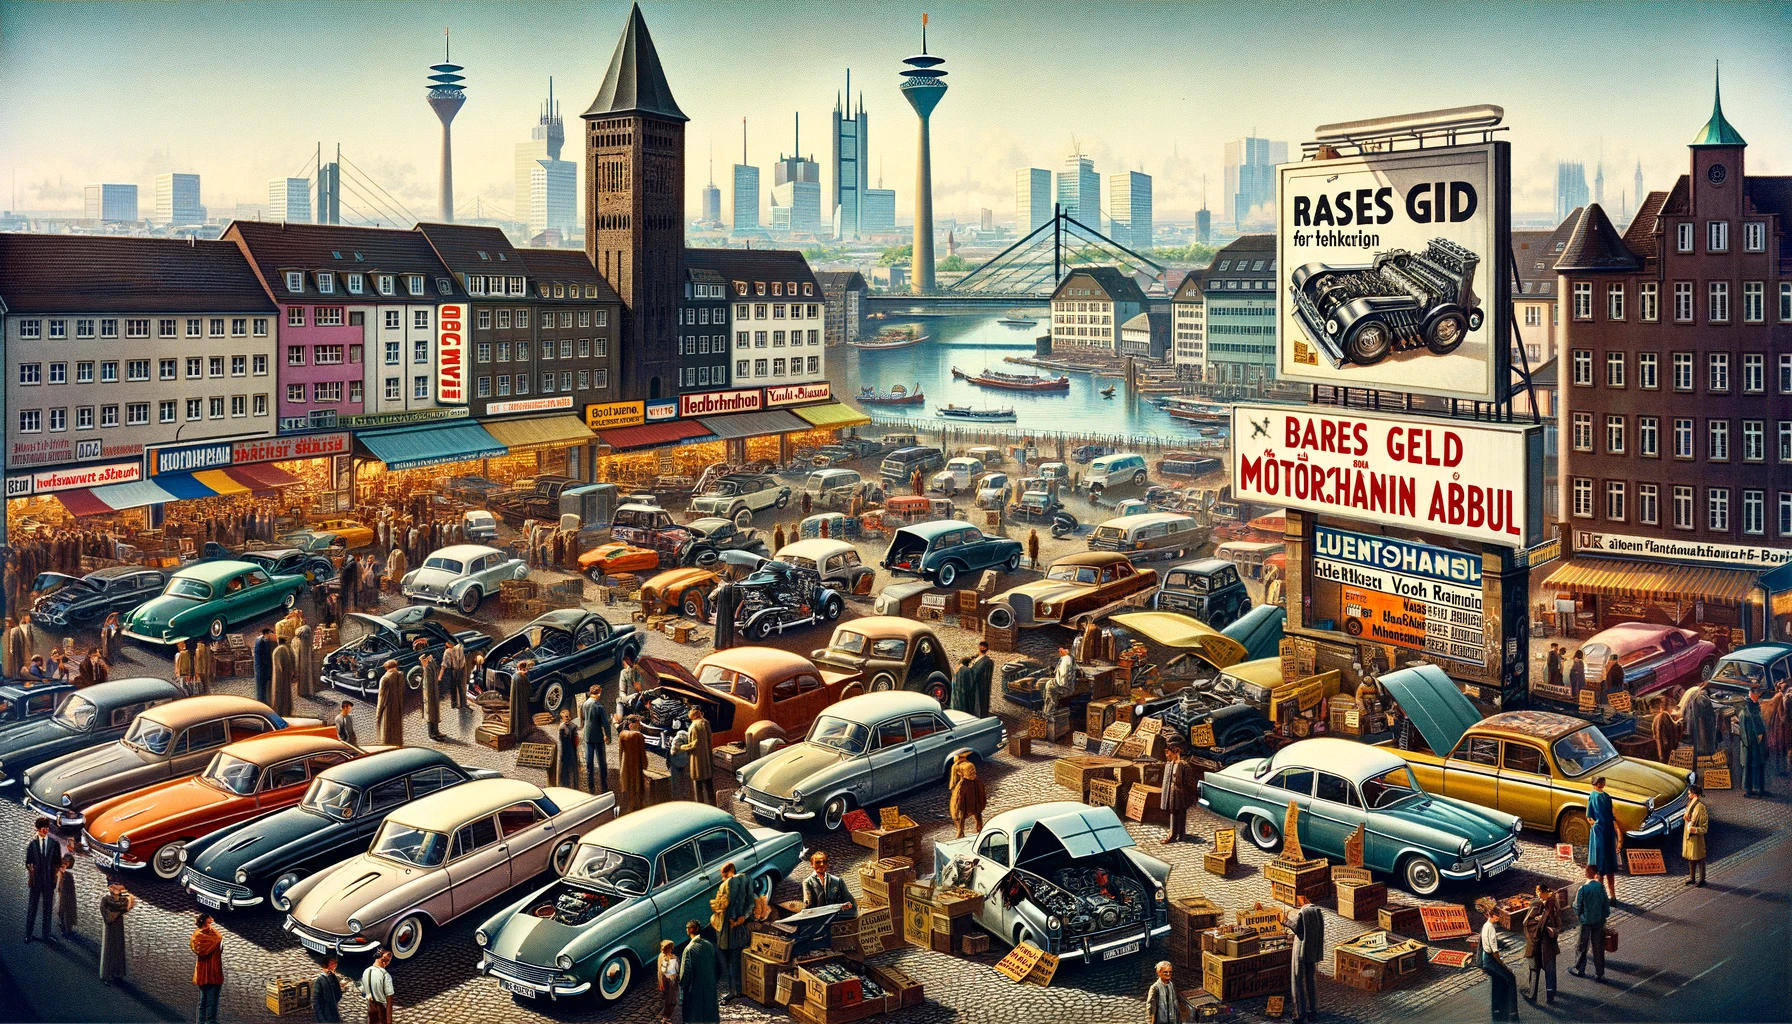 Das Bild zeigt einen lebhaften Automarktplatz in Düsseldorf, Deutschland, auf dem verschiedene Autos mit Motorschäden zum Verkauf ausgestellt sind. Im Vordergrund ist ein auffälliges Plakat zu sehen, das "Bares Geld für Ihren Motorschaden Ankauf" bewirbt, was auf einen Markt für den Ankauf beschädigter Fahrzeuge hinweist. Im Hintergrund ist die Skyline von Düsseldorf mit markanten Wahrzeichen wie dem Rheinturm zu erkennen. Die Szene ist belebt, mit Menschen, die Autos inspizieren und Geschäfte verhandeln